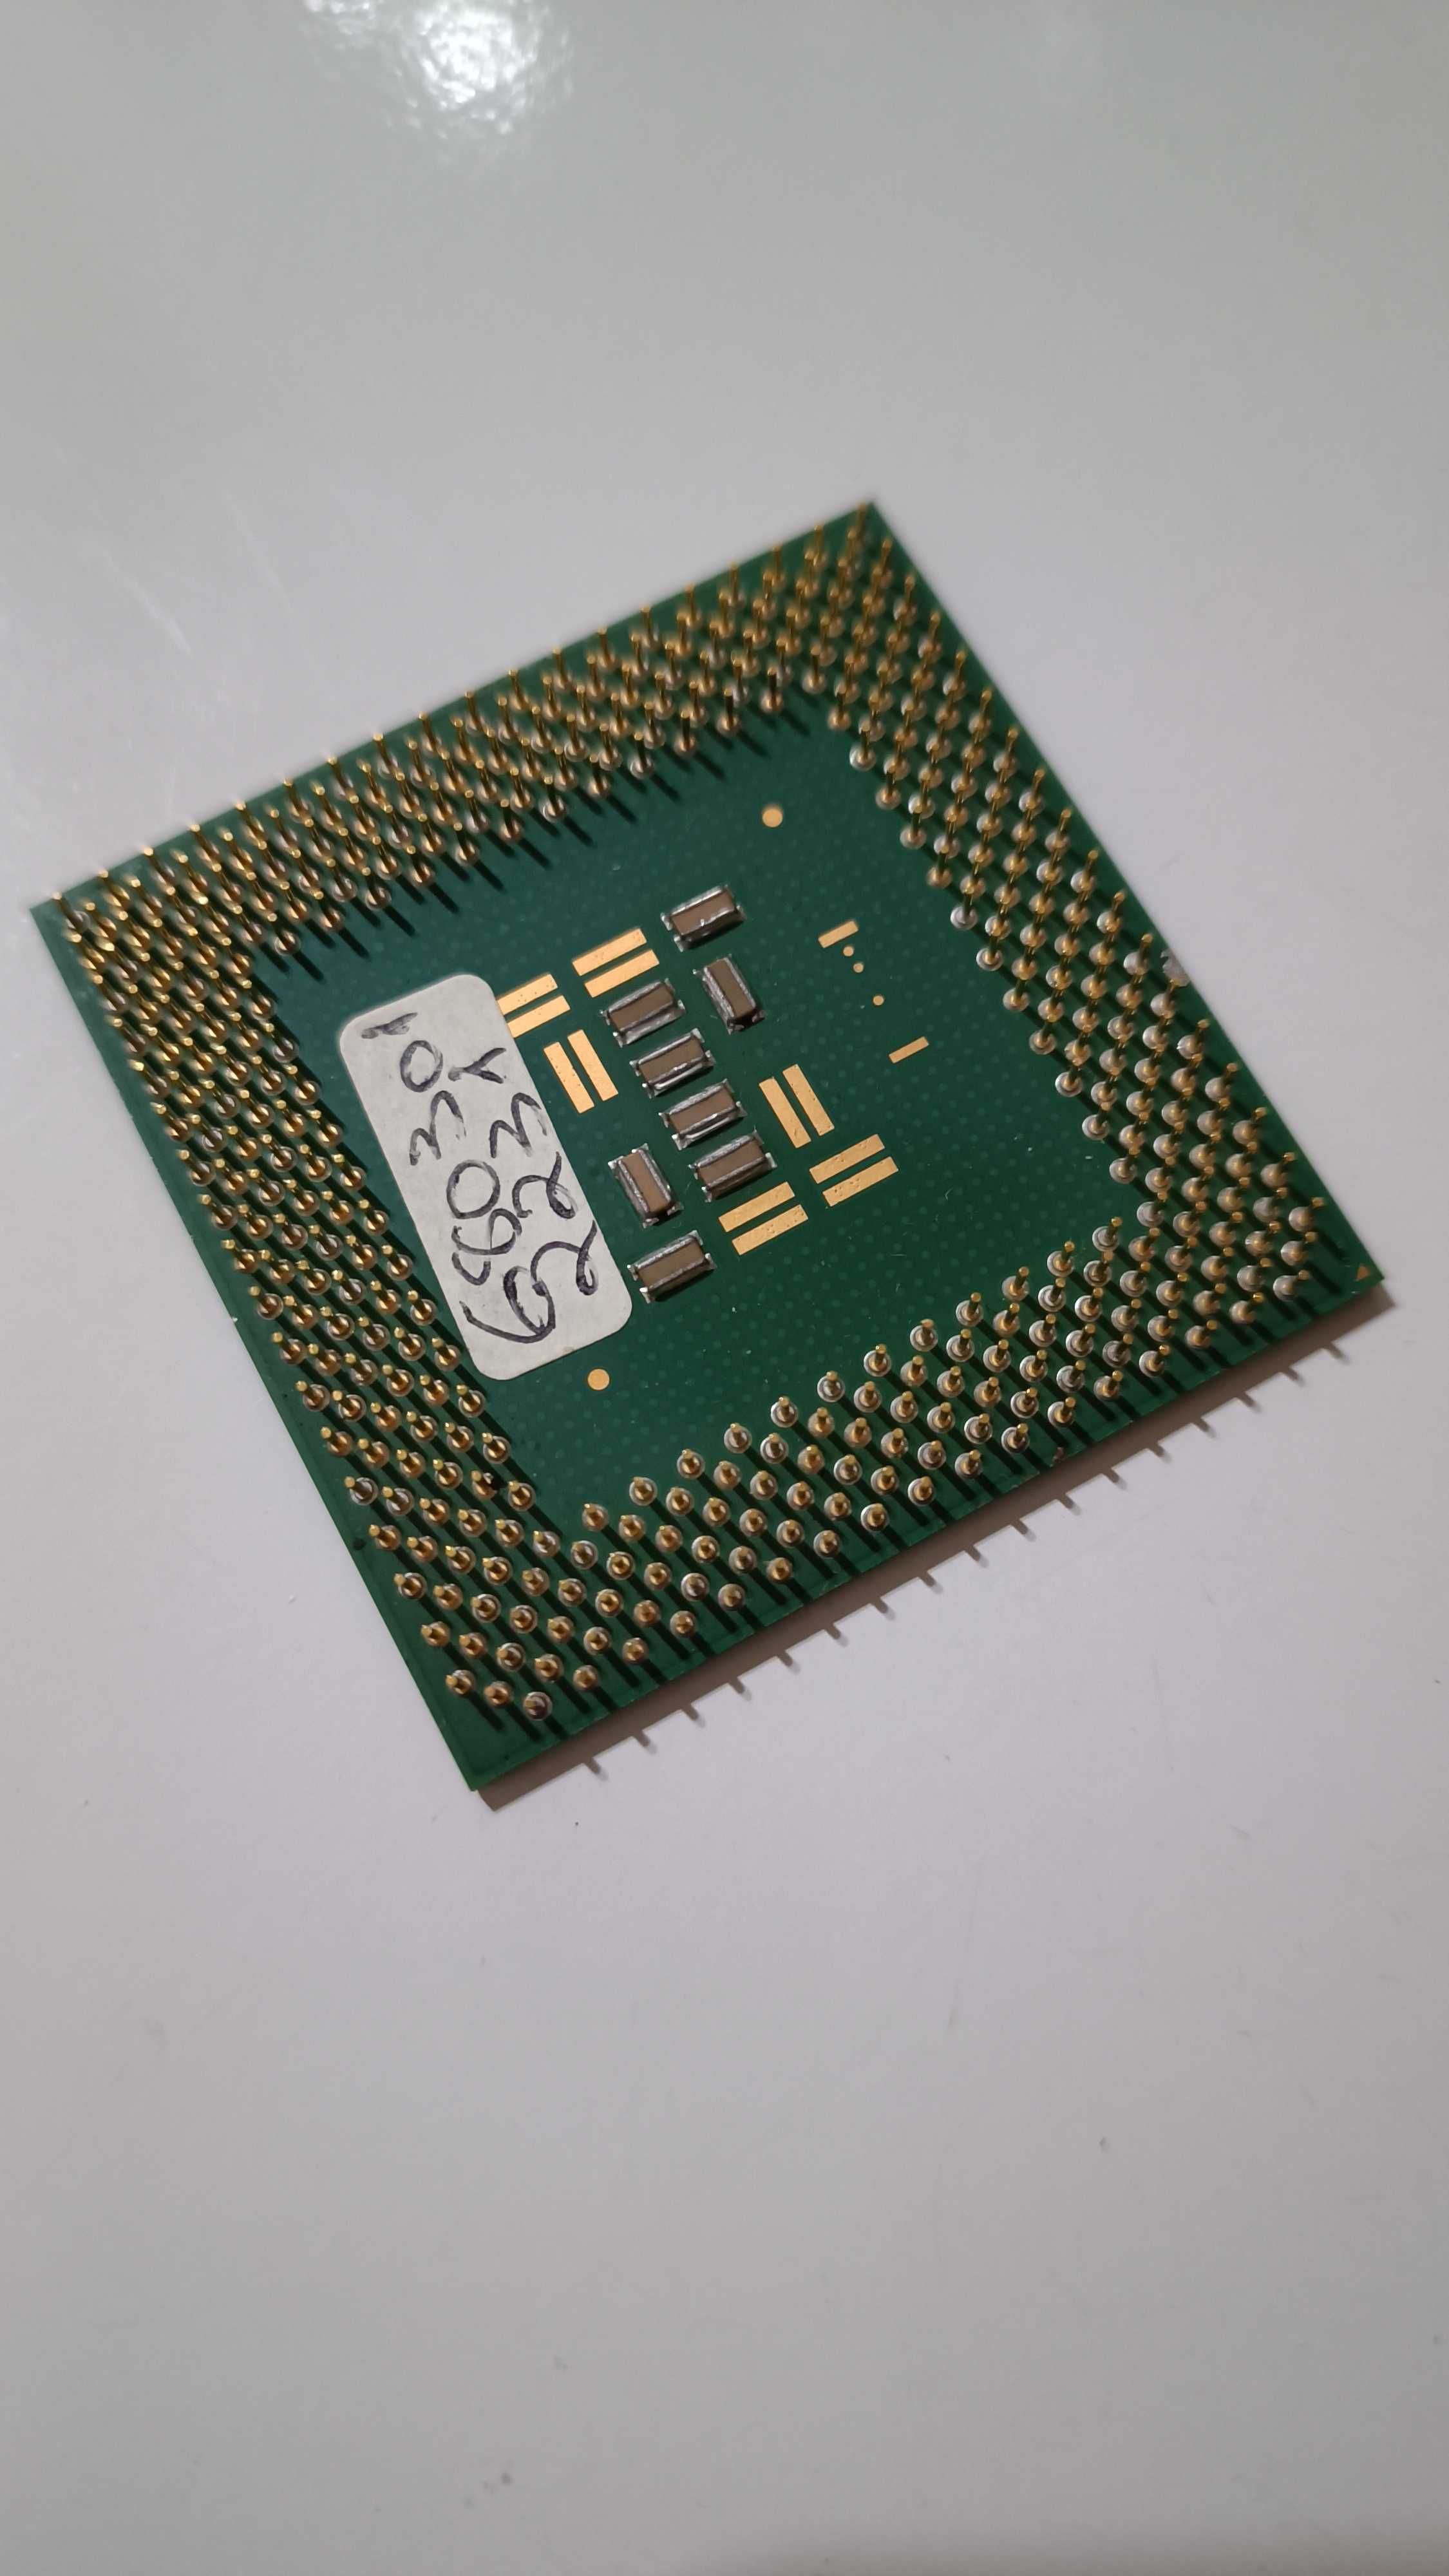 Intel Pentium III 800 MHz